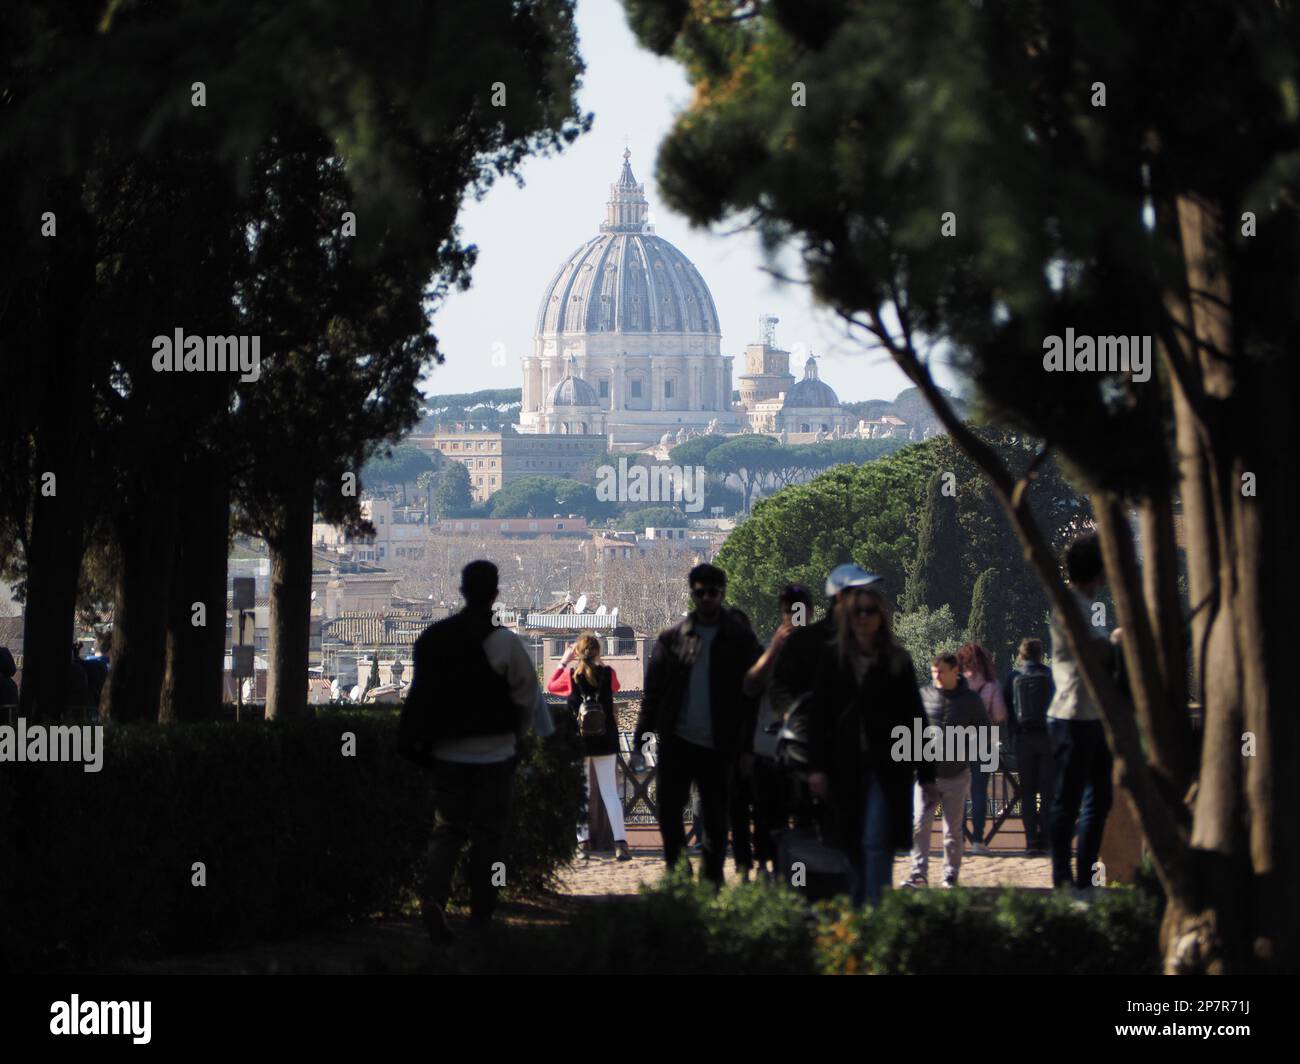 Touristes sur la colline du Palatin à Rome, avec une vue magnifique sur la basilique Saint-Pierre. Rome, Italie Banque D'Images